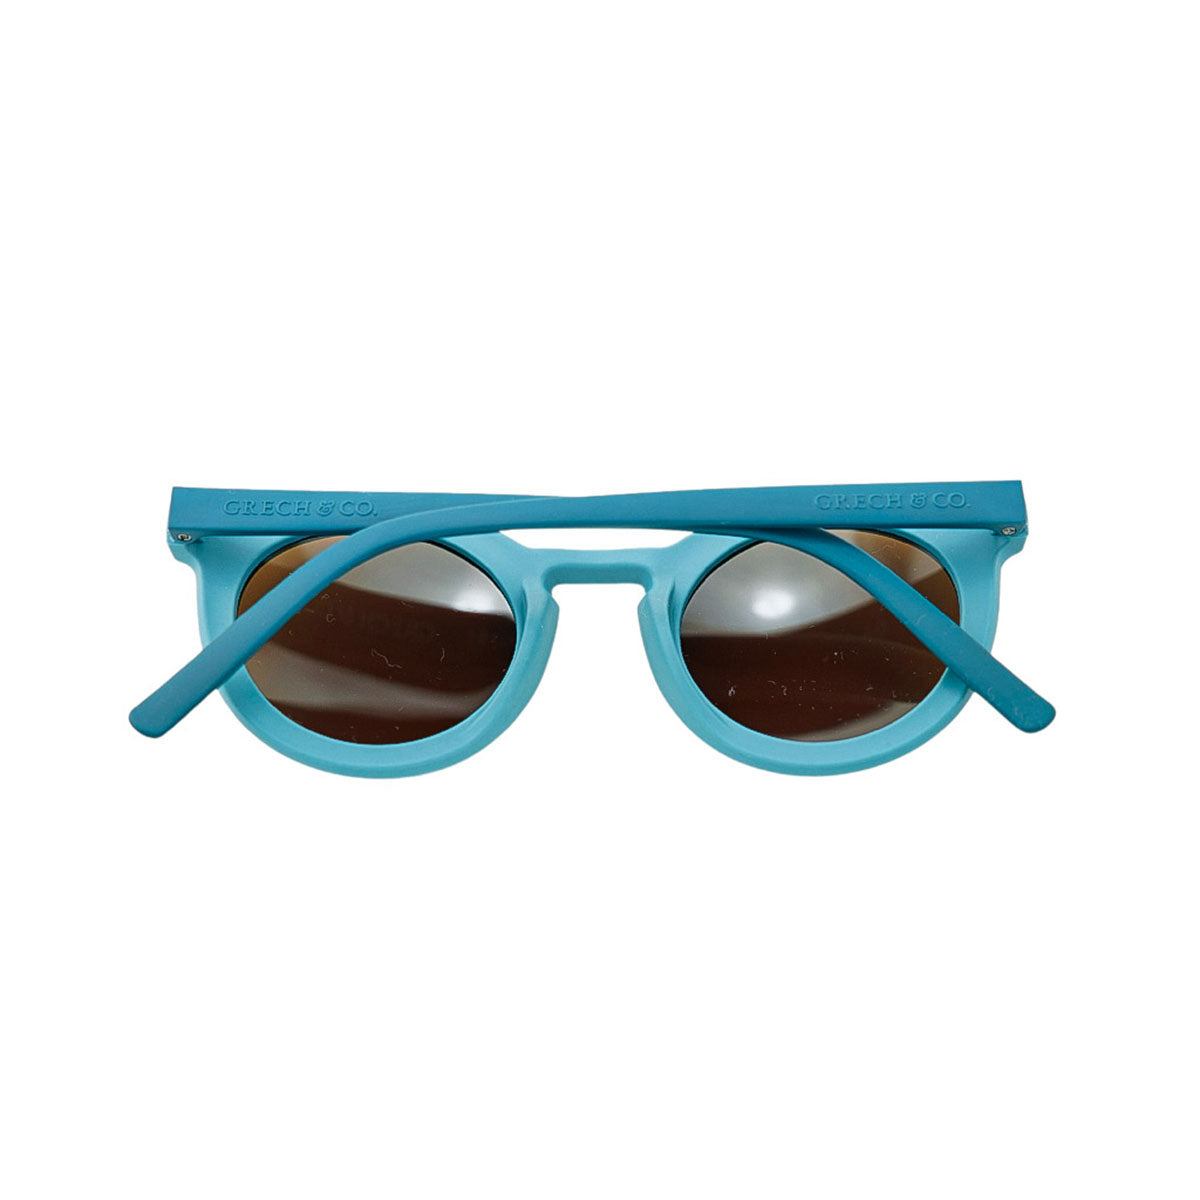 De Grech & co. zonnebril classic buigbaar kids in de kleur laguna is speciaal ontworpen voor kindjes die willen matchen met hun mama. De zonnebril is namelijk ook beschikbaar voor moeders en baby’s! VanZus